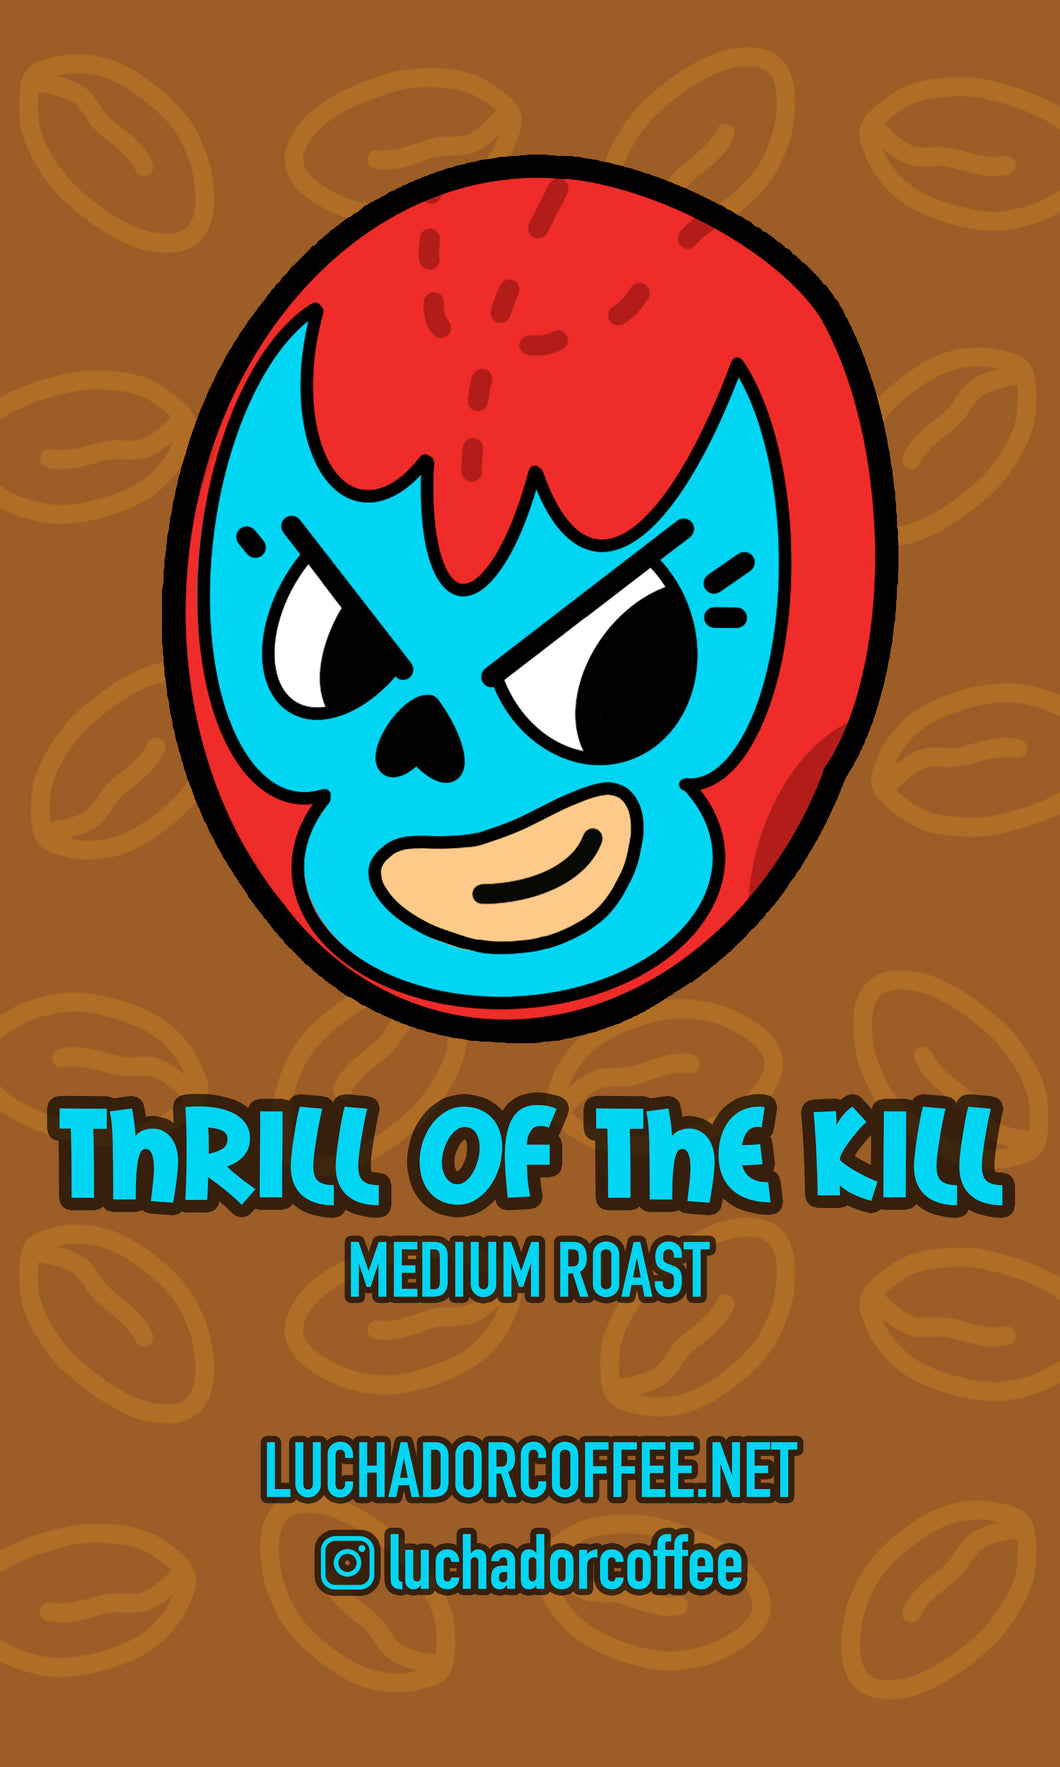 Thrill of the Kill - Medium Roast